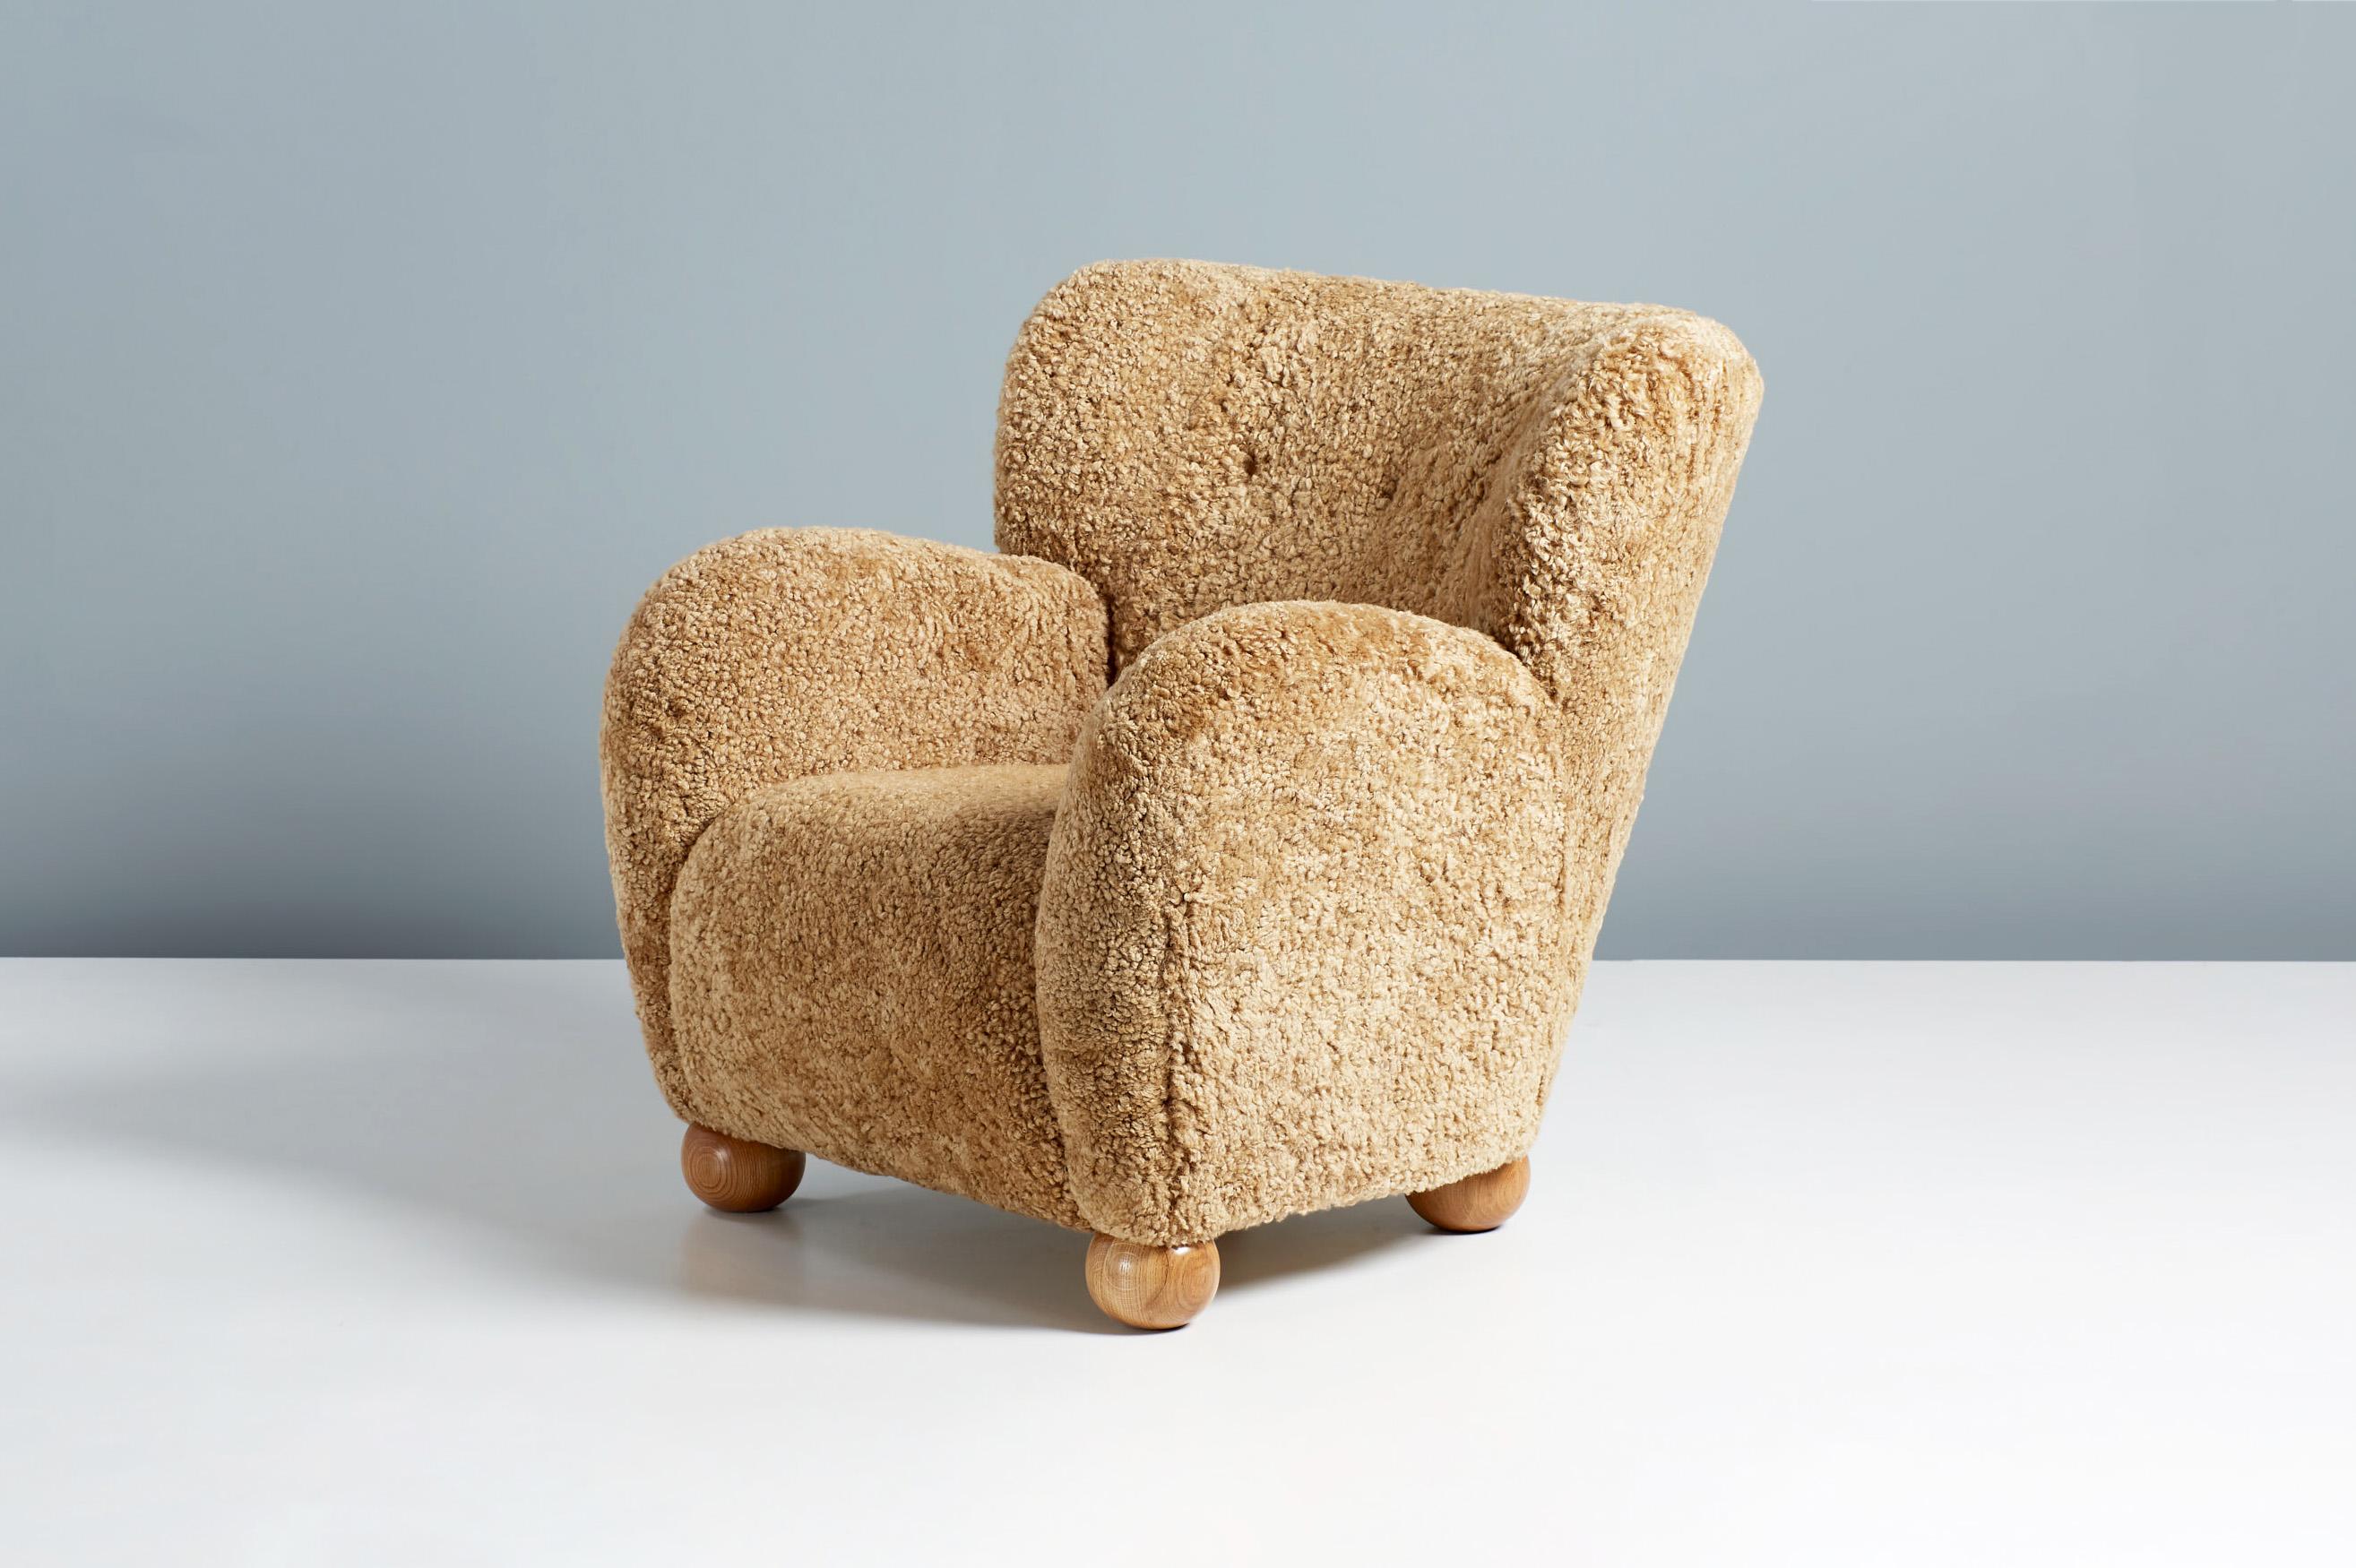 Dagmar design - Chaise longue Karu

Une chaise longue sur mesure, développée et produite dans nos ateliers à Londres, avec des matériaux de la plus haute qualité. Cet exemple est garni de tissu en érable et de pieds en chêne huilé. La chaise Karu